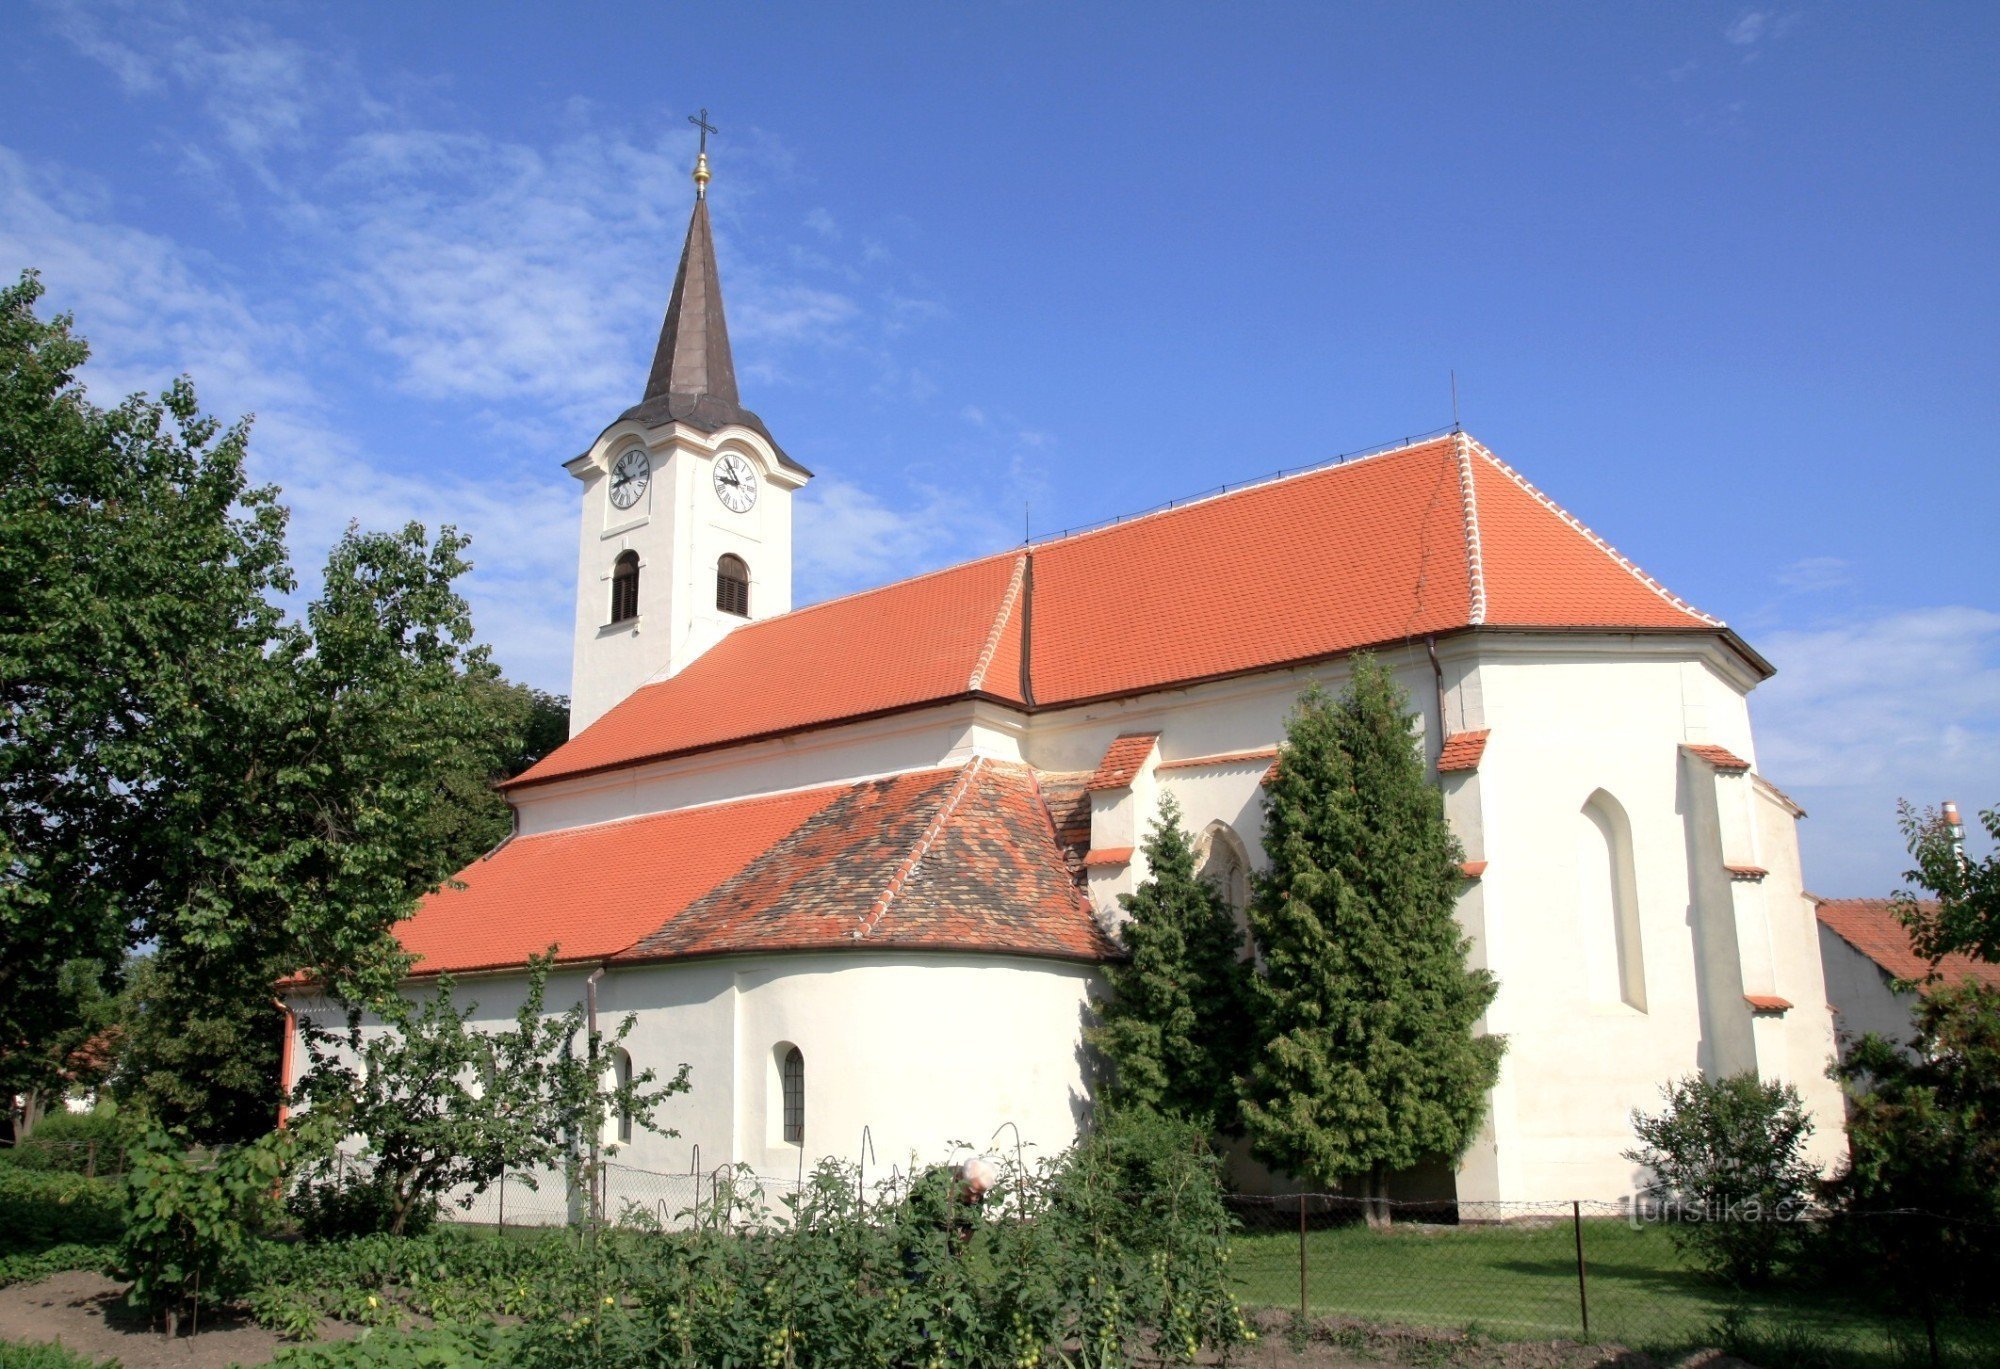 Новоседлы - церковь св. Олдржих